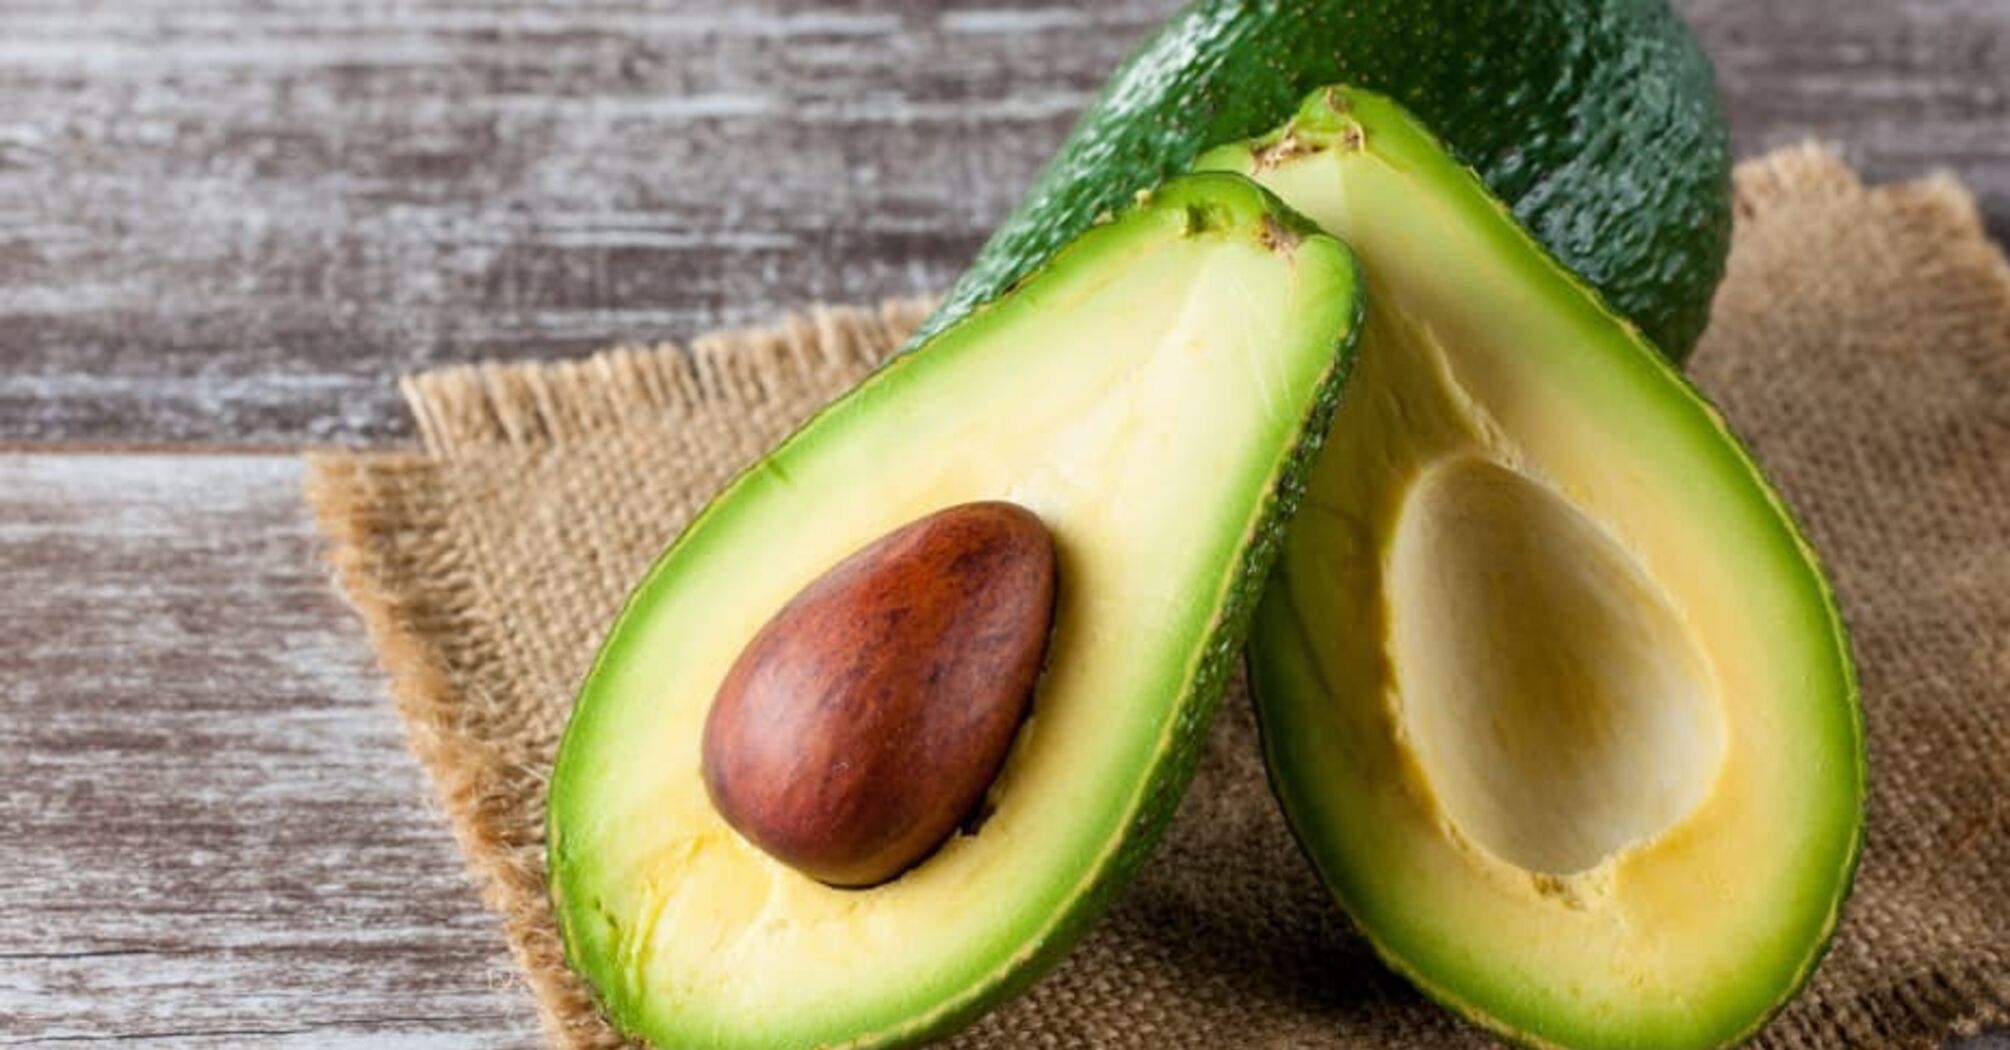 Помогает при диете: ученые исследовали, что будет, если употреблять авокадо каждый день